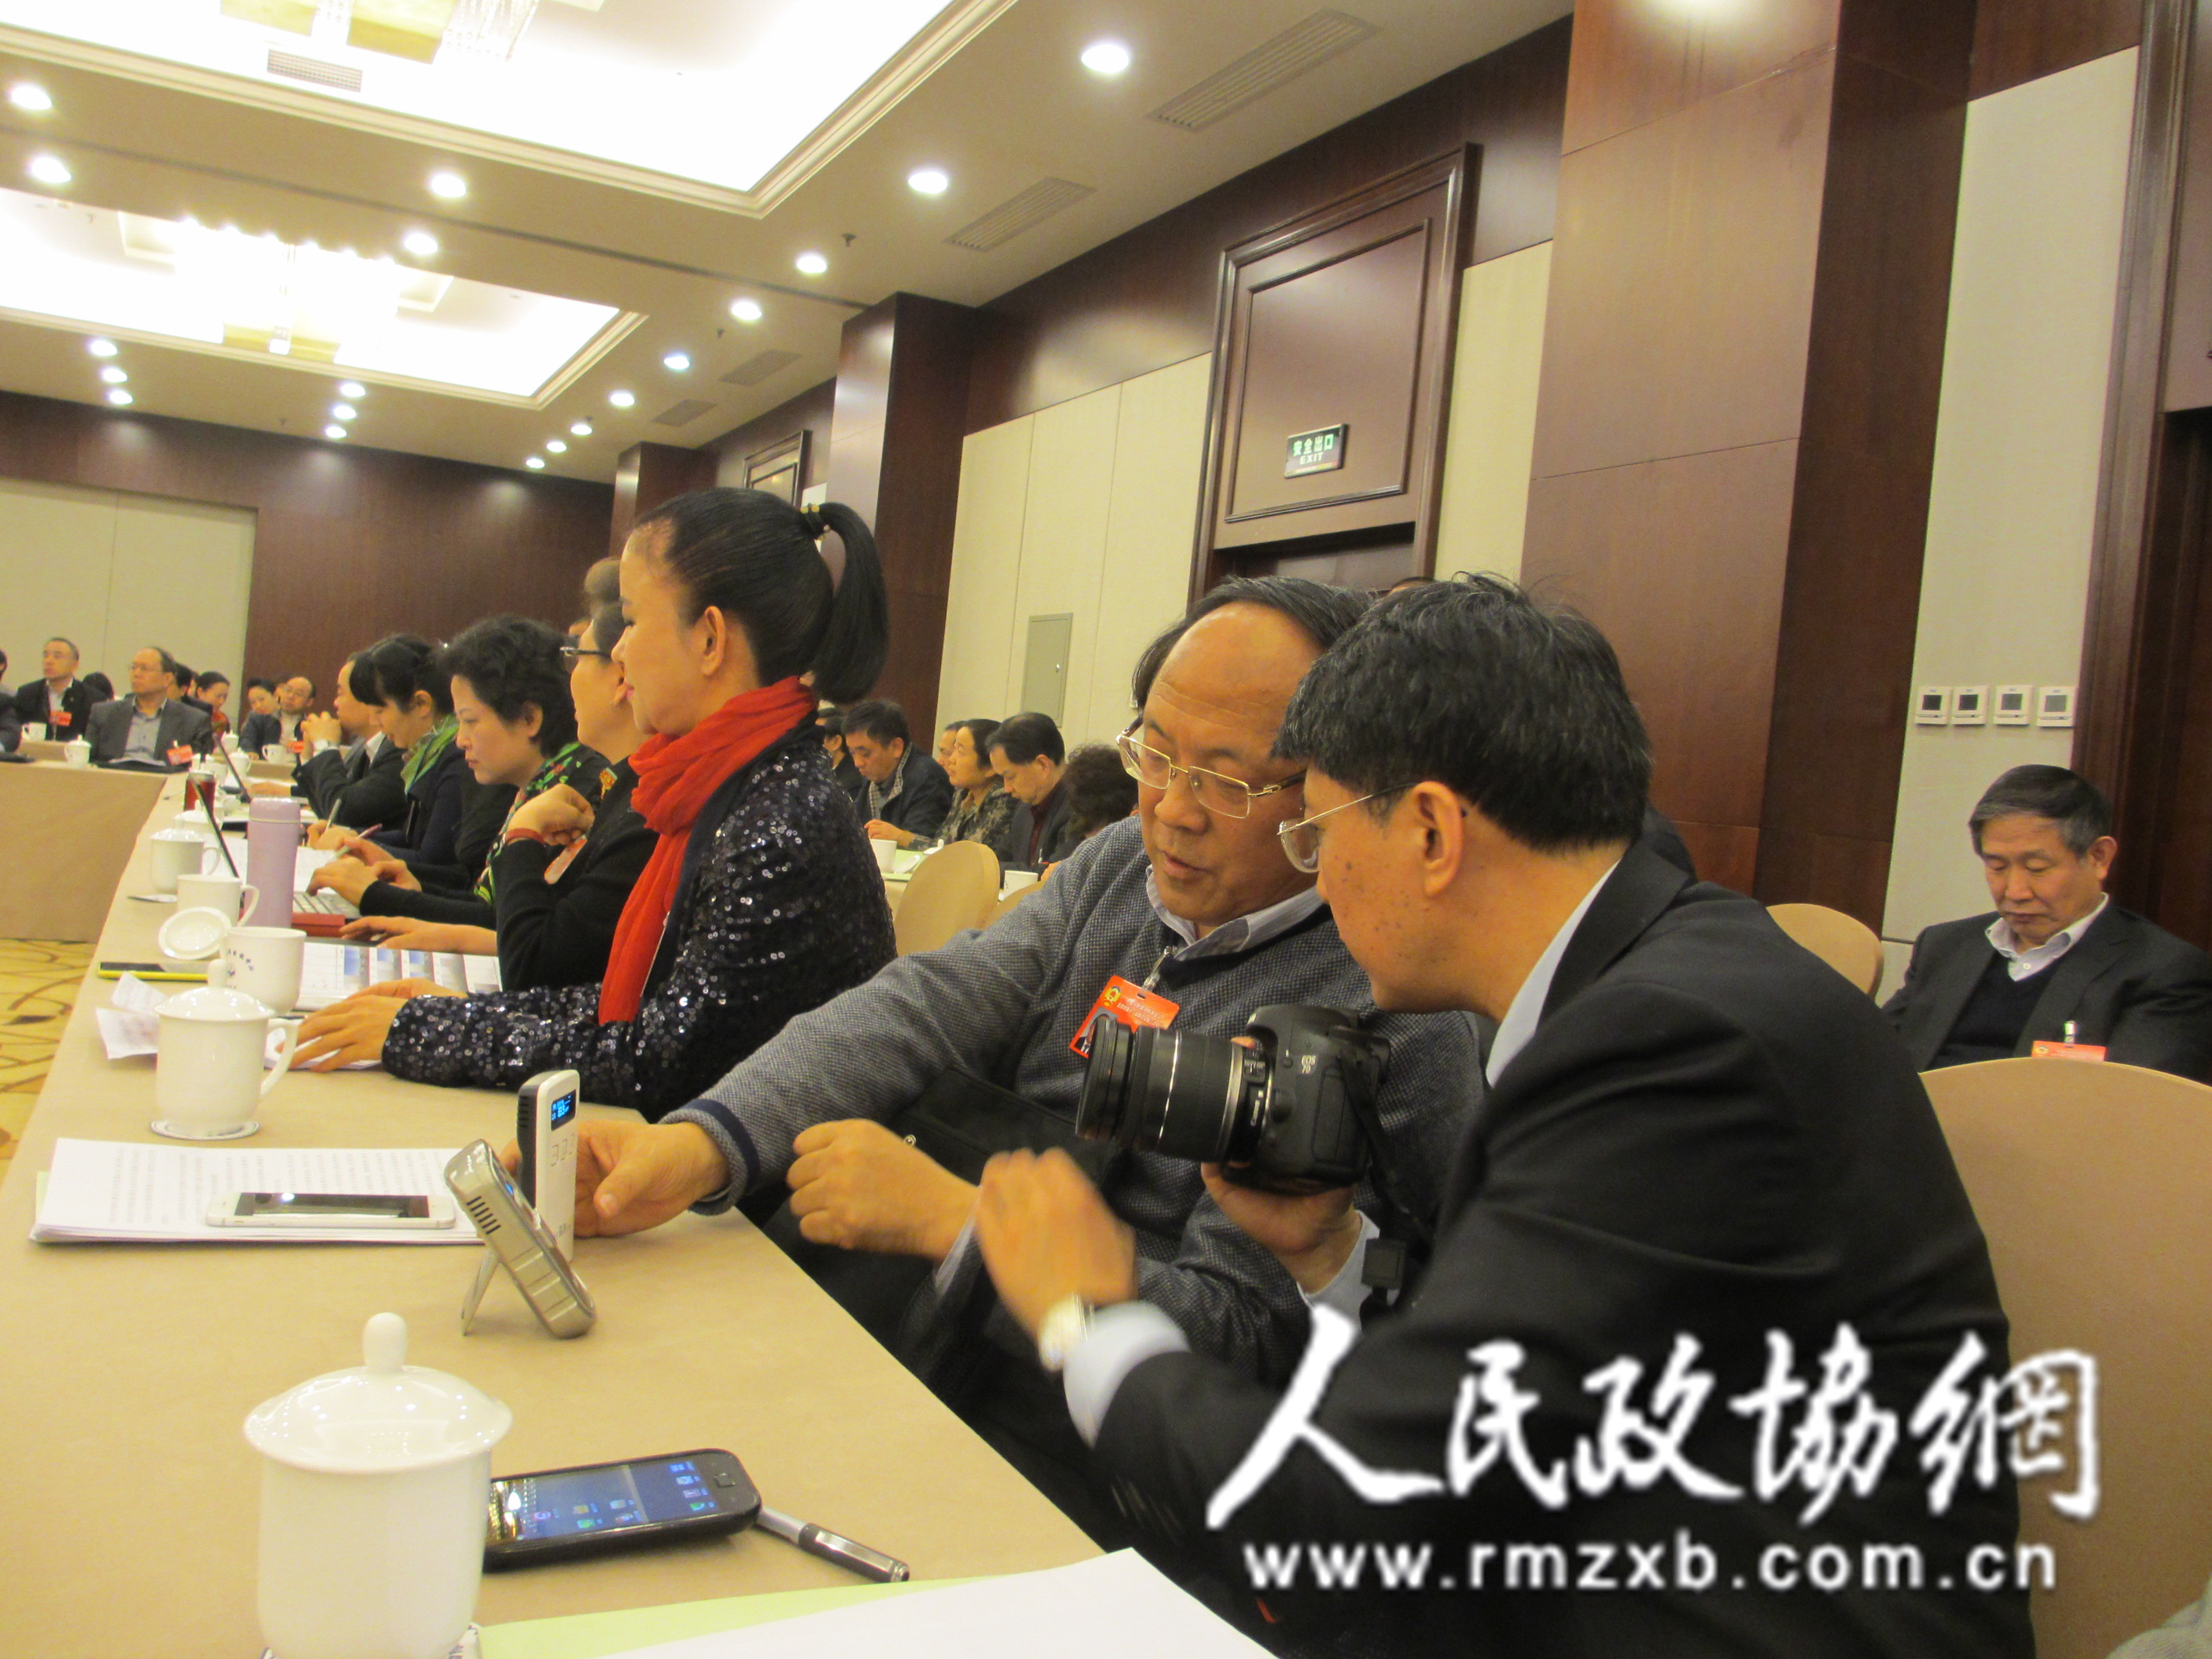 
											
											
												刘迎建委员：室内PM2.5为82.9，空气质量良，适合开会
											